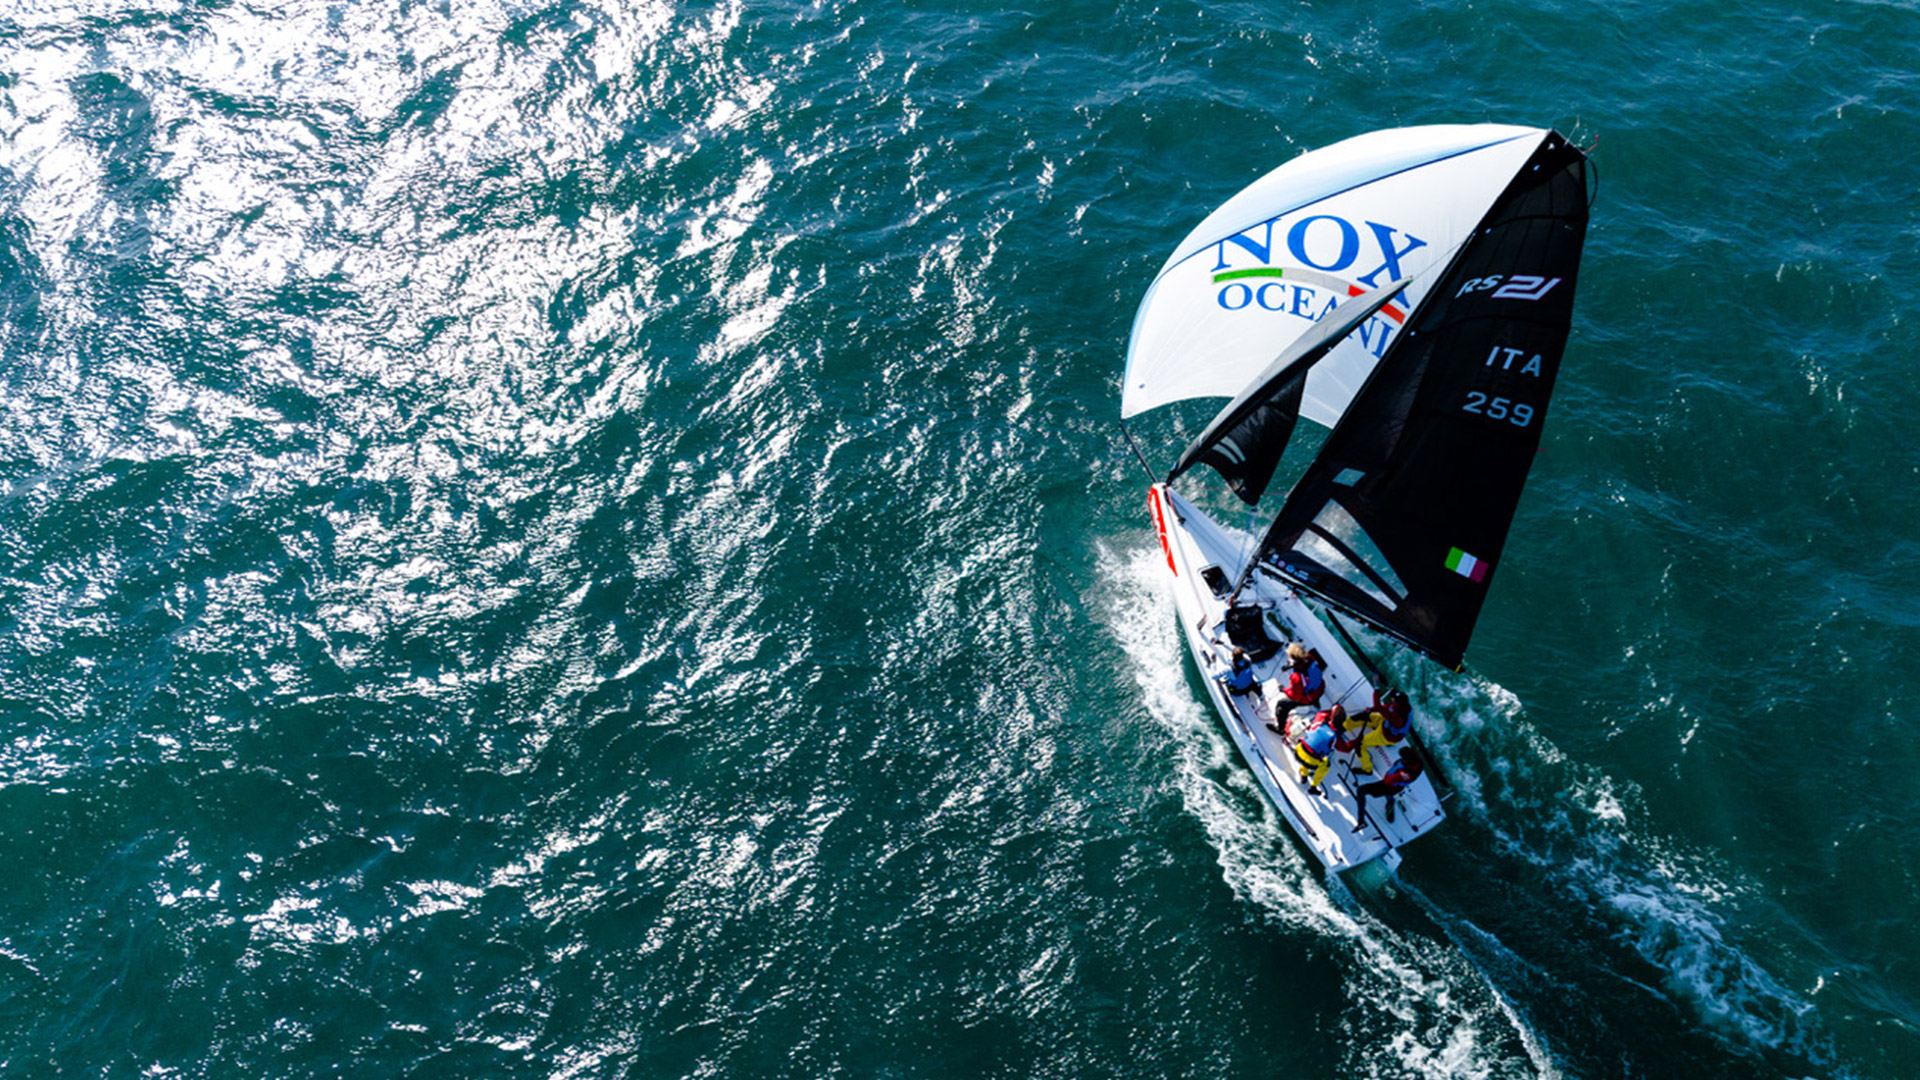 Barca nella Nox Oceani in navigazione al Campionato del mondo RS21 in Croazia